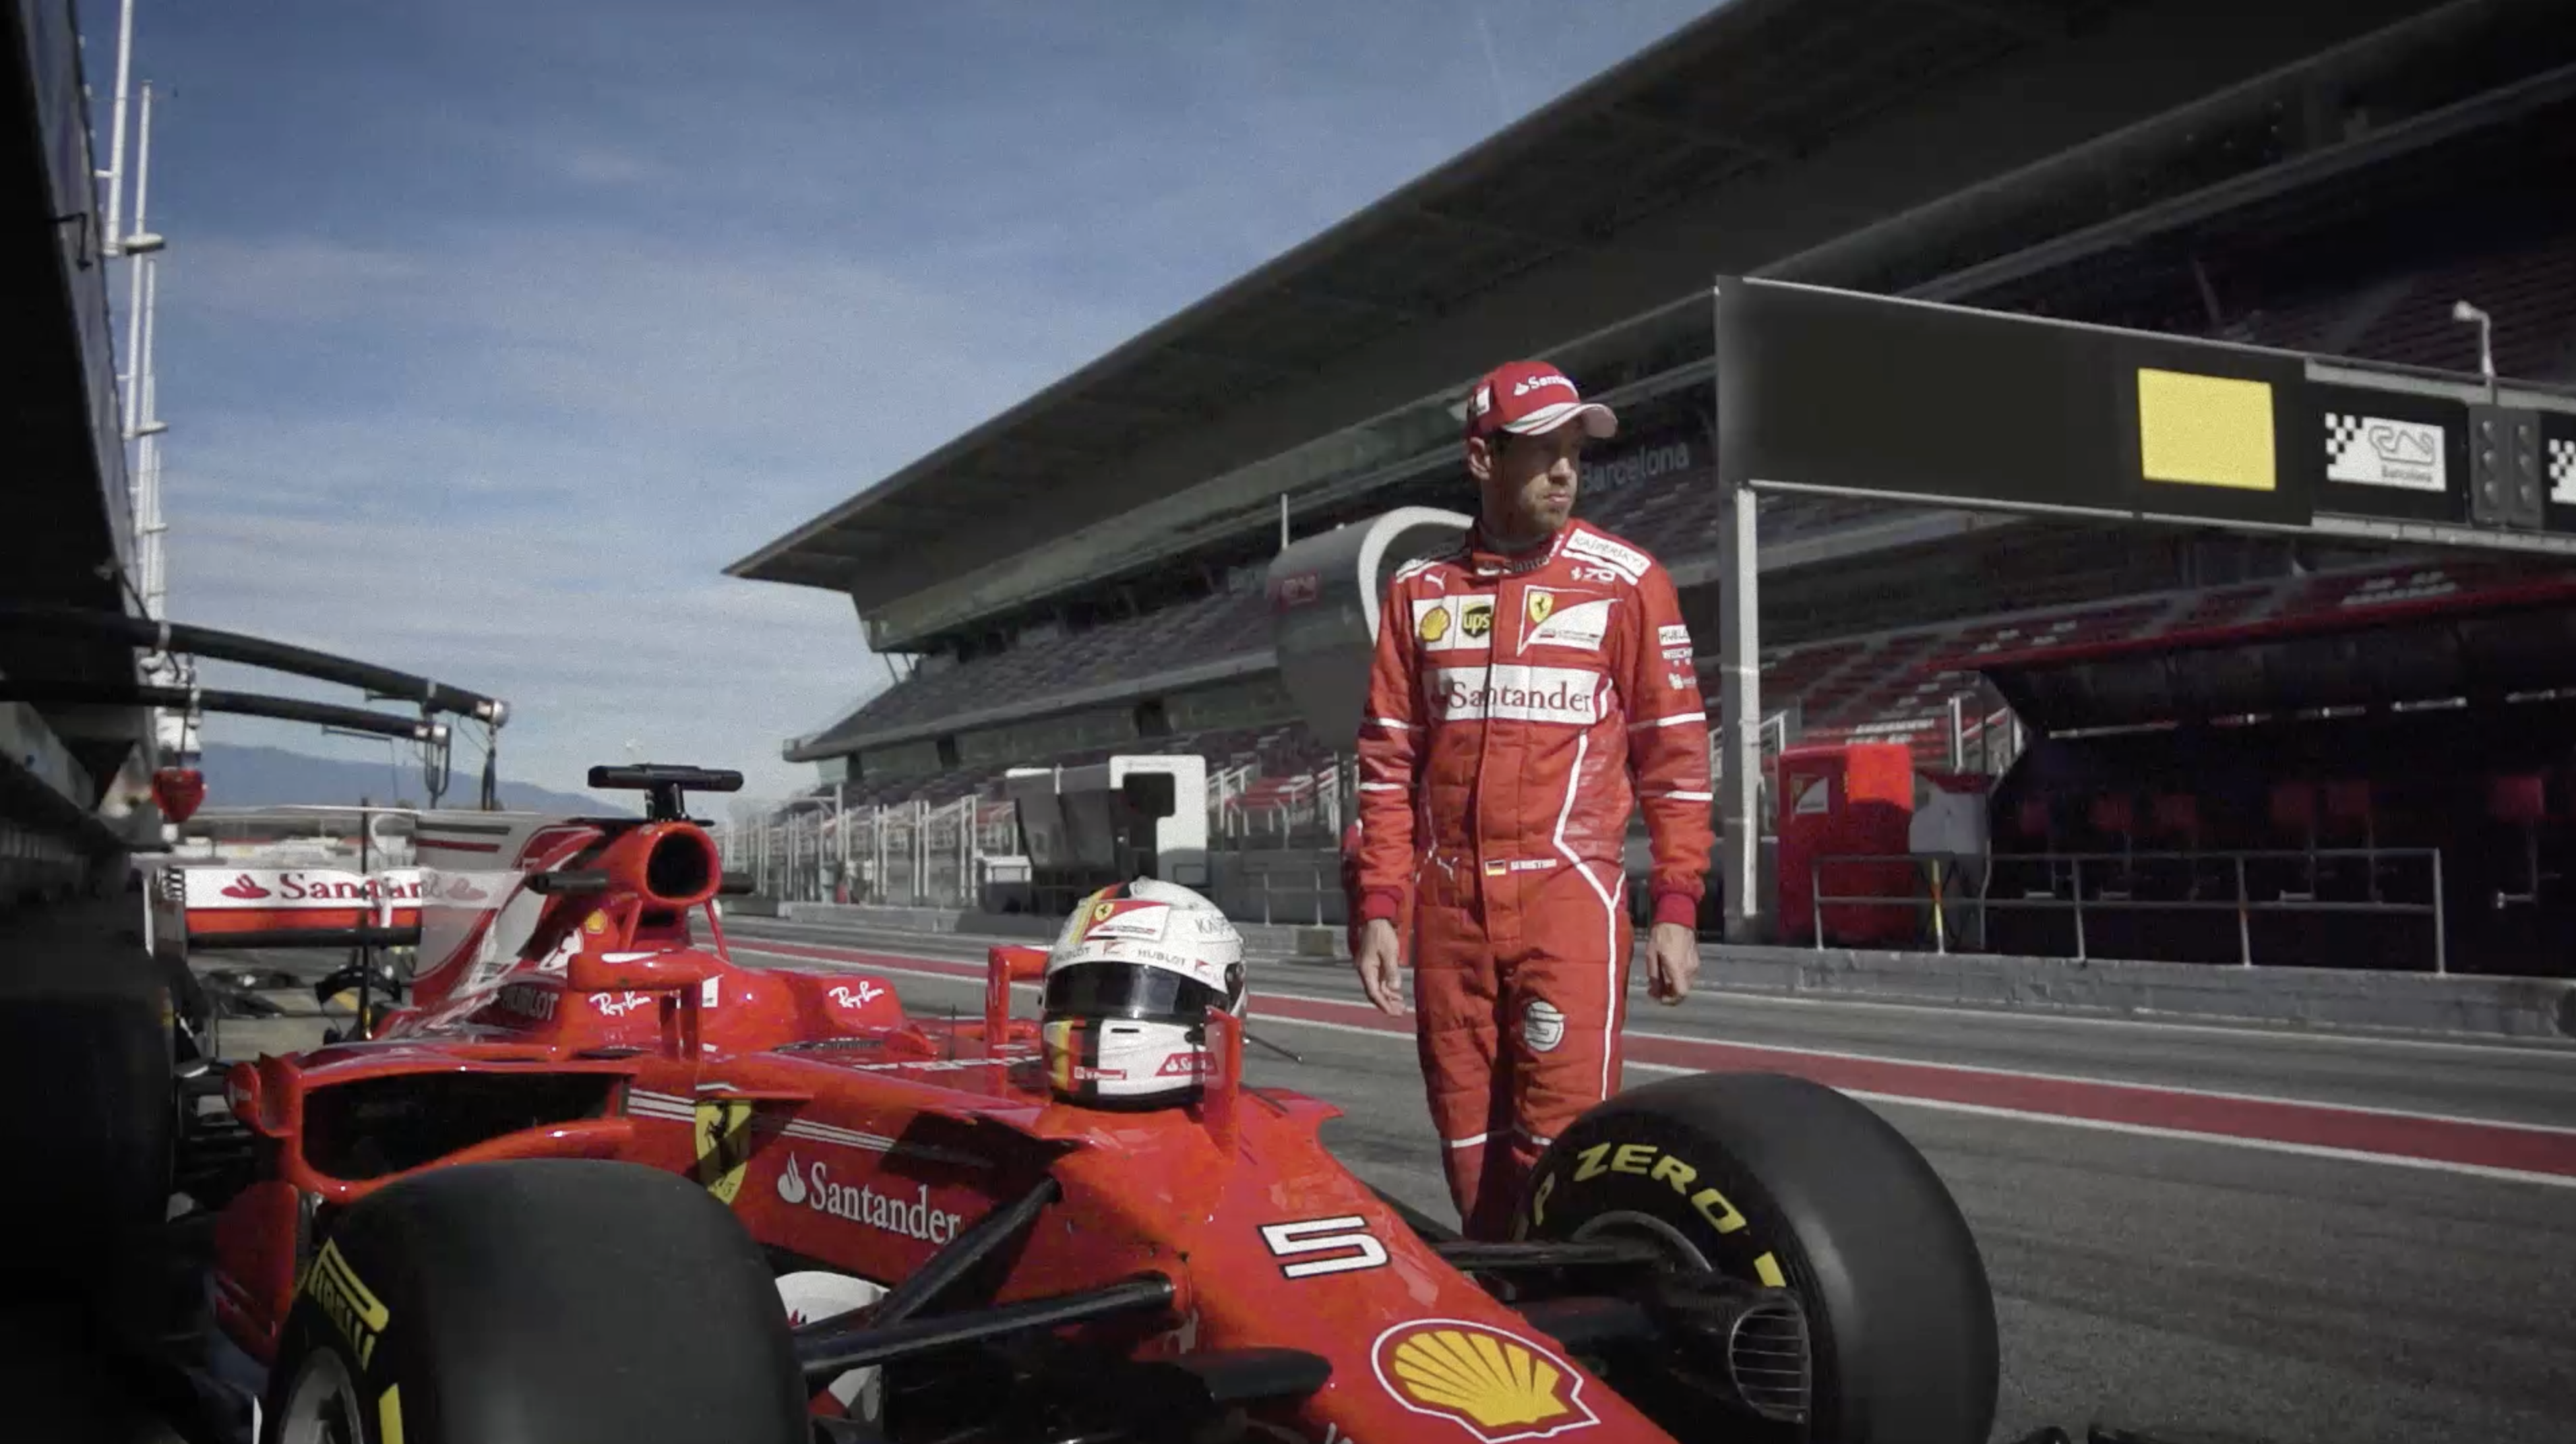 Ray-Ban roule pour la Scuderia Ferrari